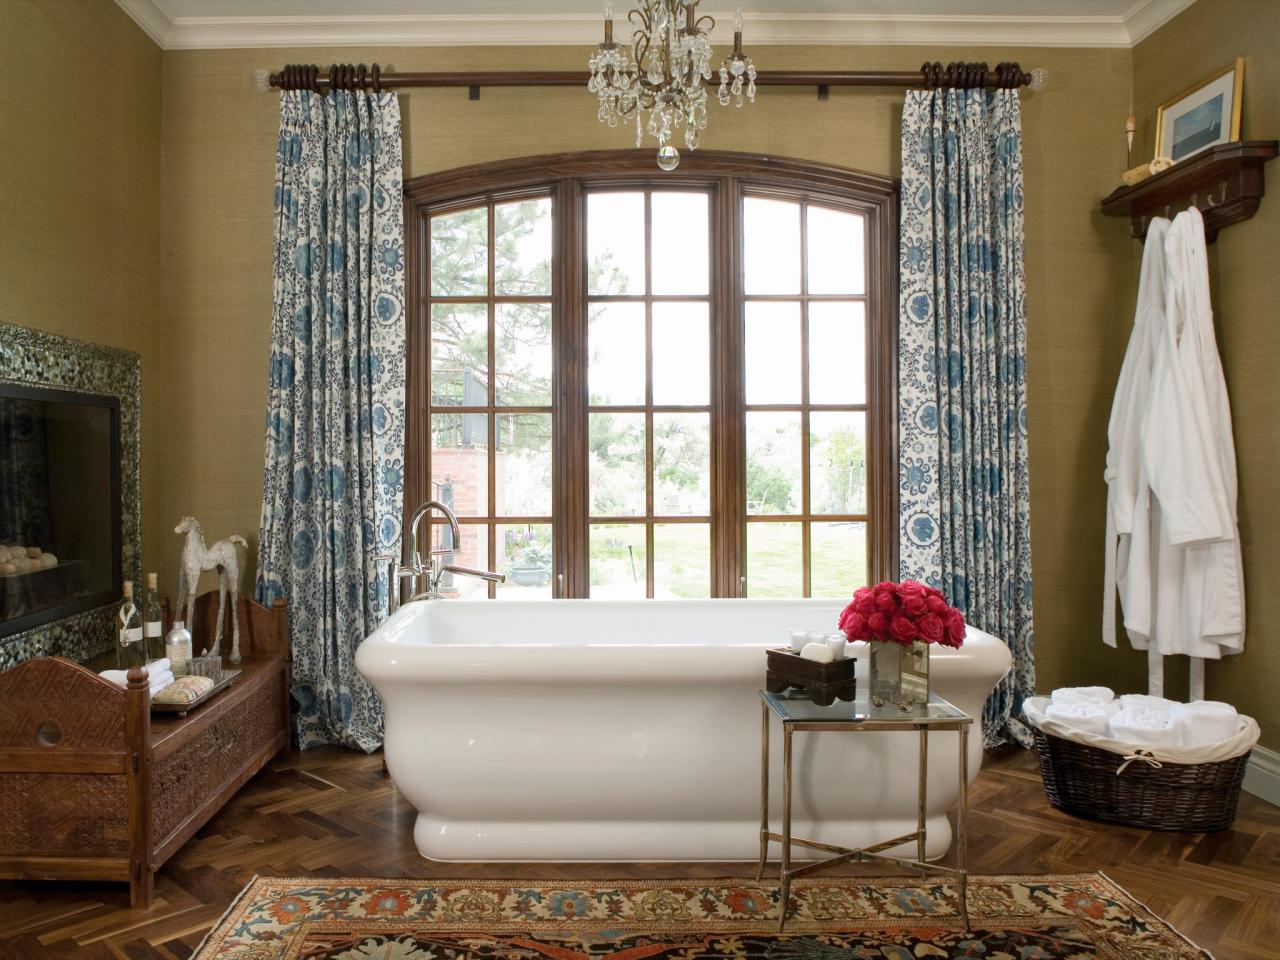 salle-de-bain-vieux-style-tapis-rideau-meuble-design-objet-original-andrea-monath-schumacher-traditionnel